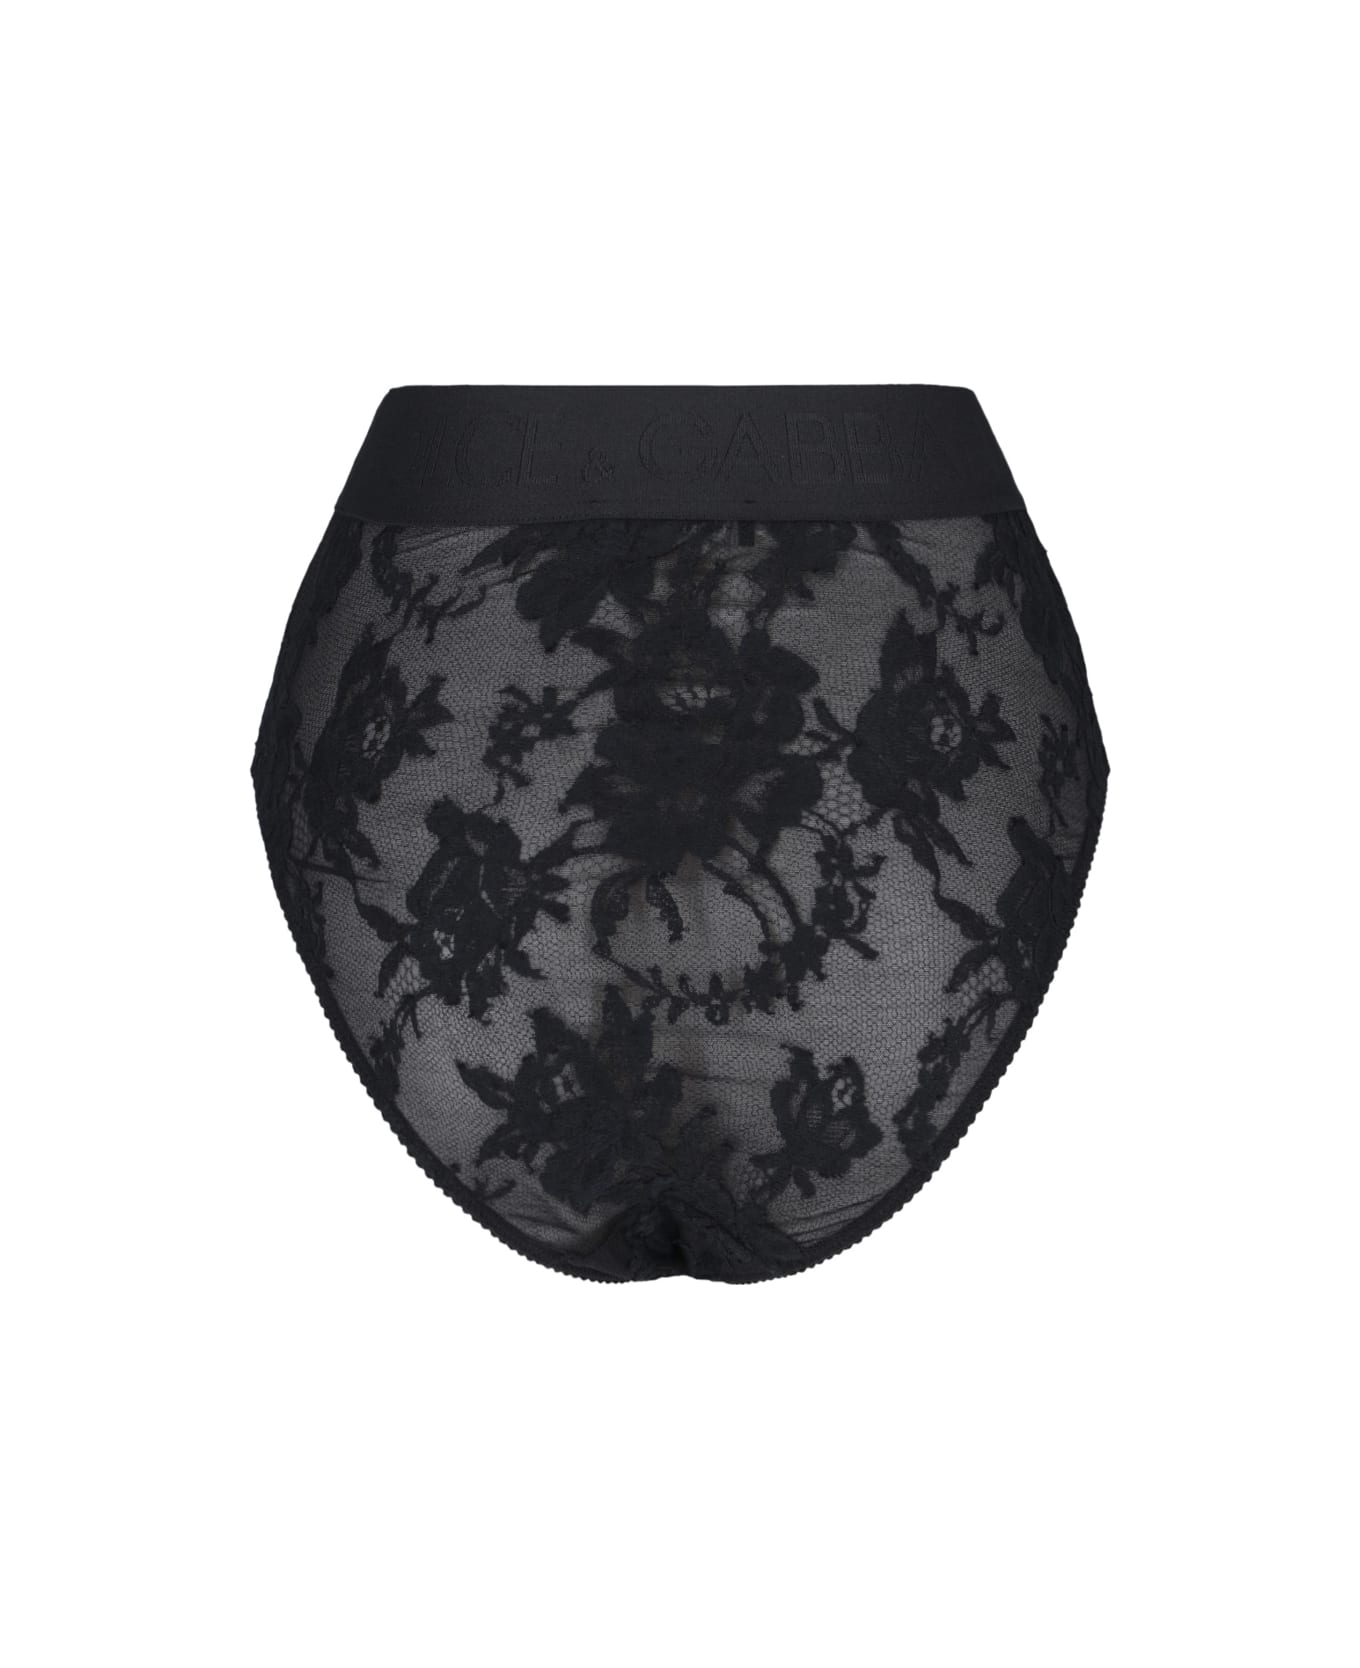 Dolce & Gabbana Underwear - Black